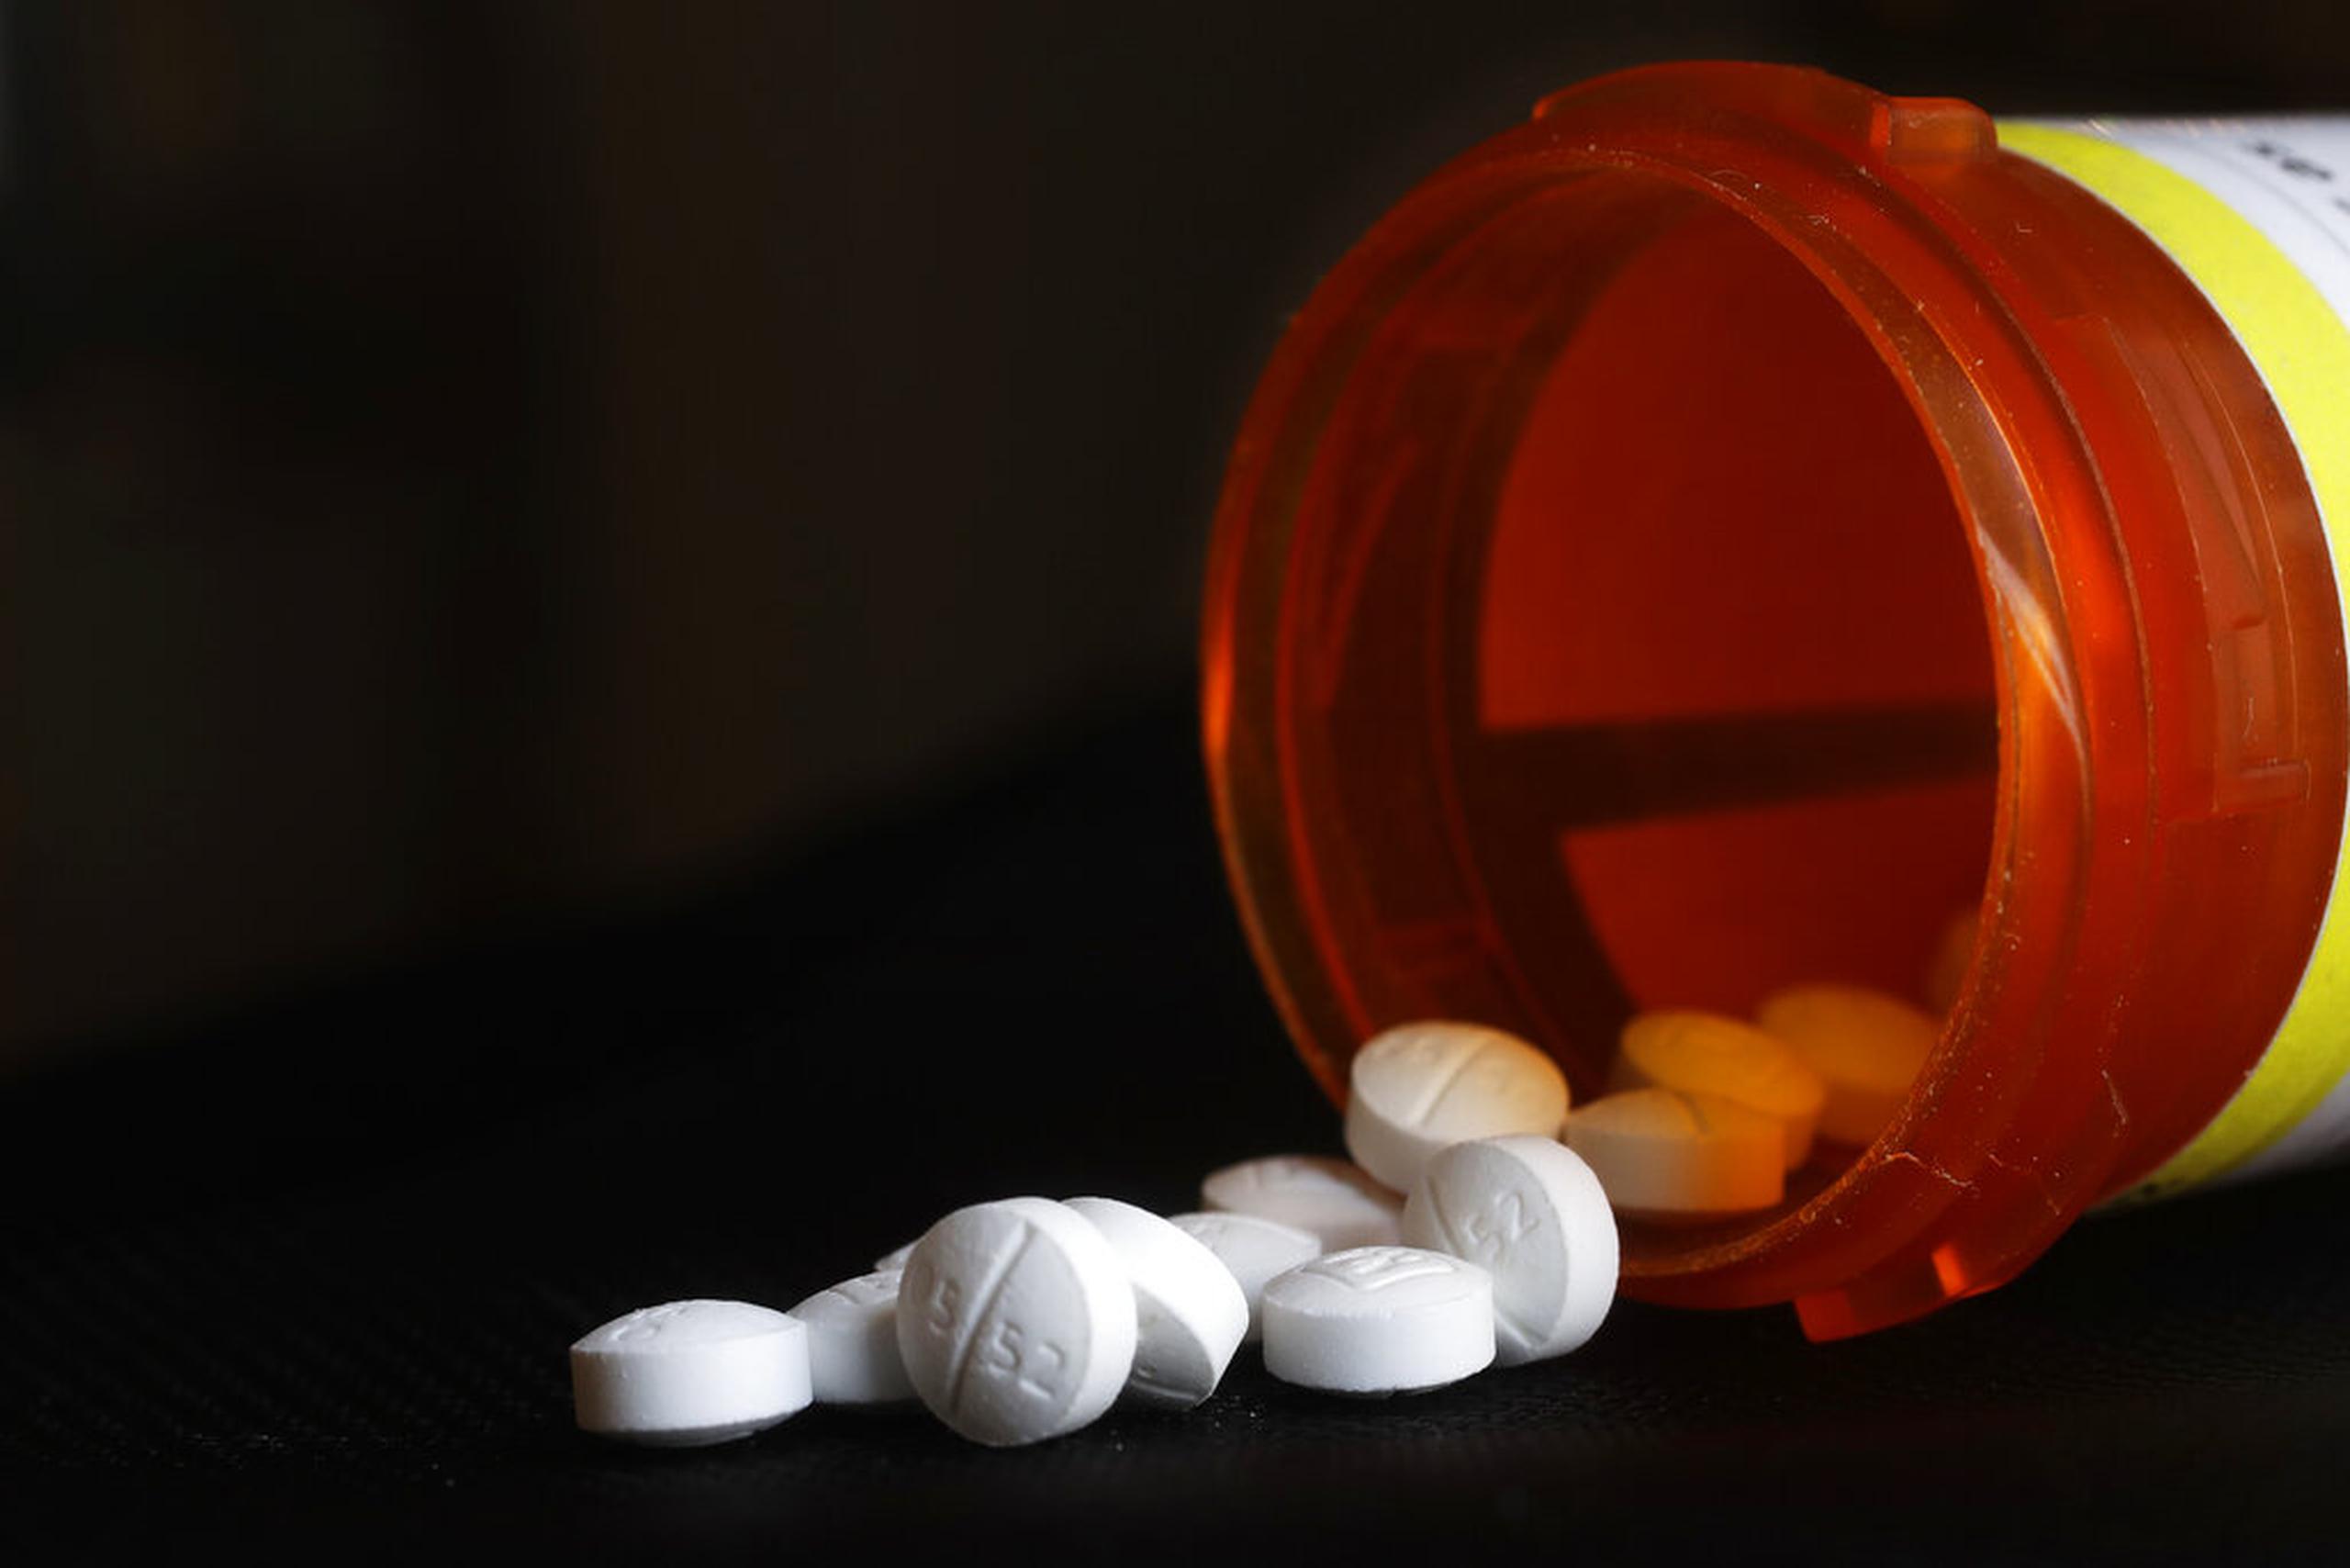 Fotografía de pastillas de oxicodona, un analgésico opioide.